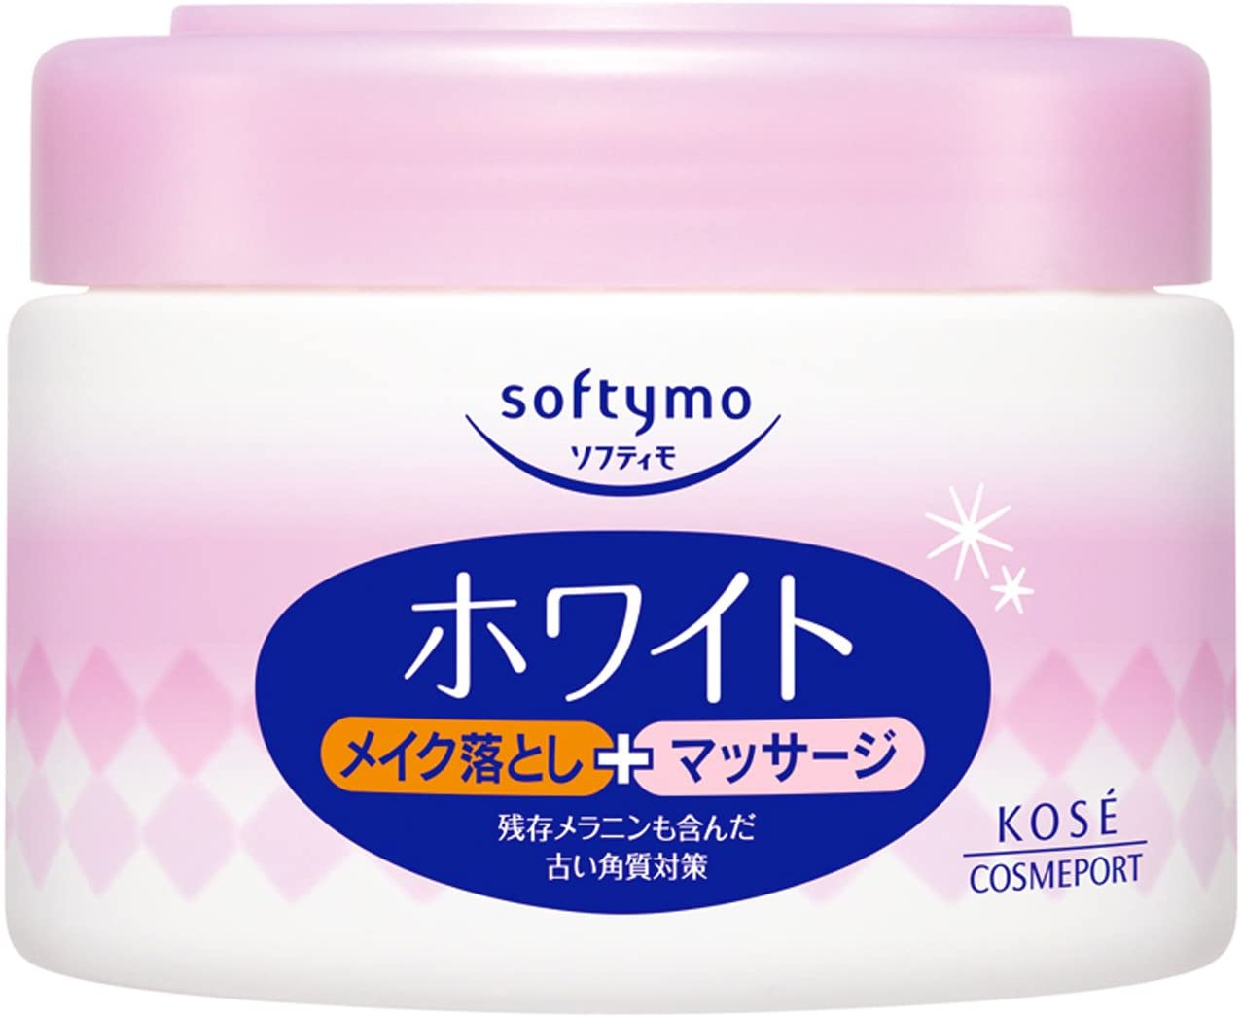 softymo(ソフティモ) ホワイト コールドクリームの商品画像